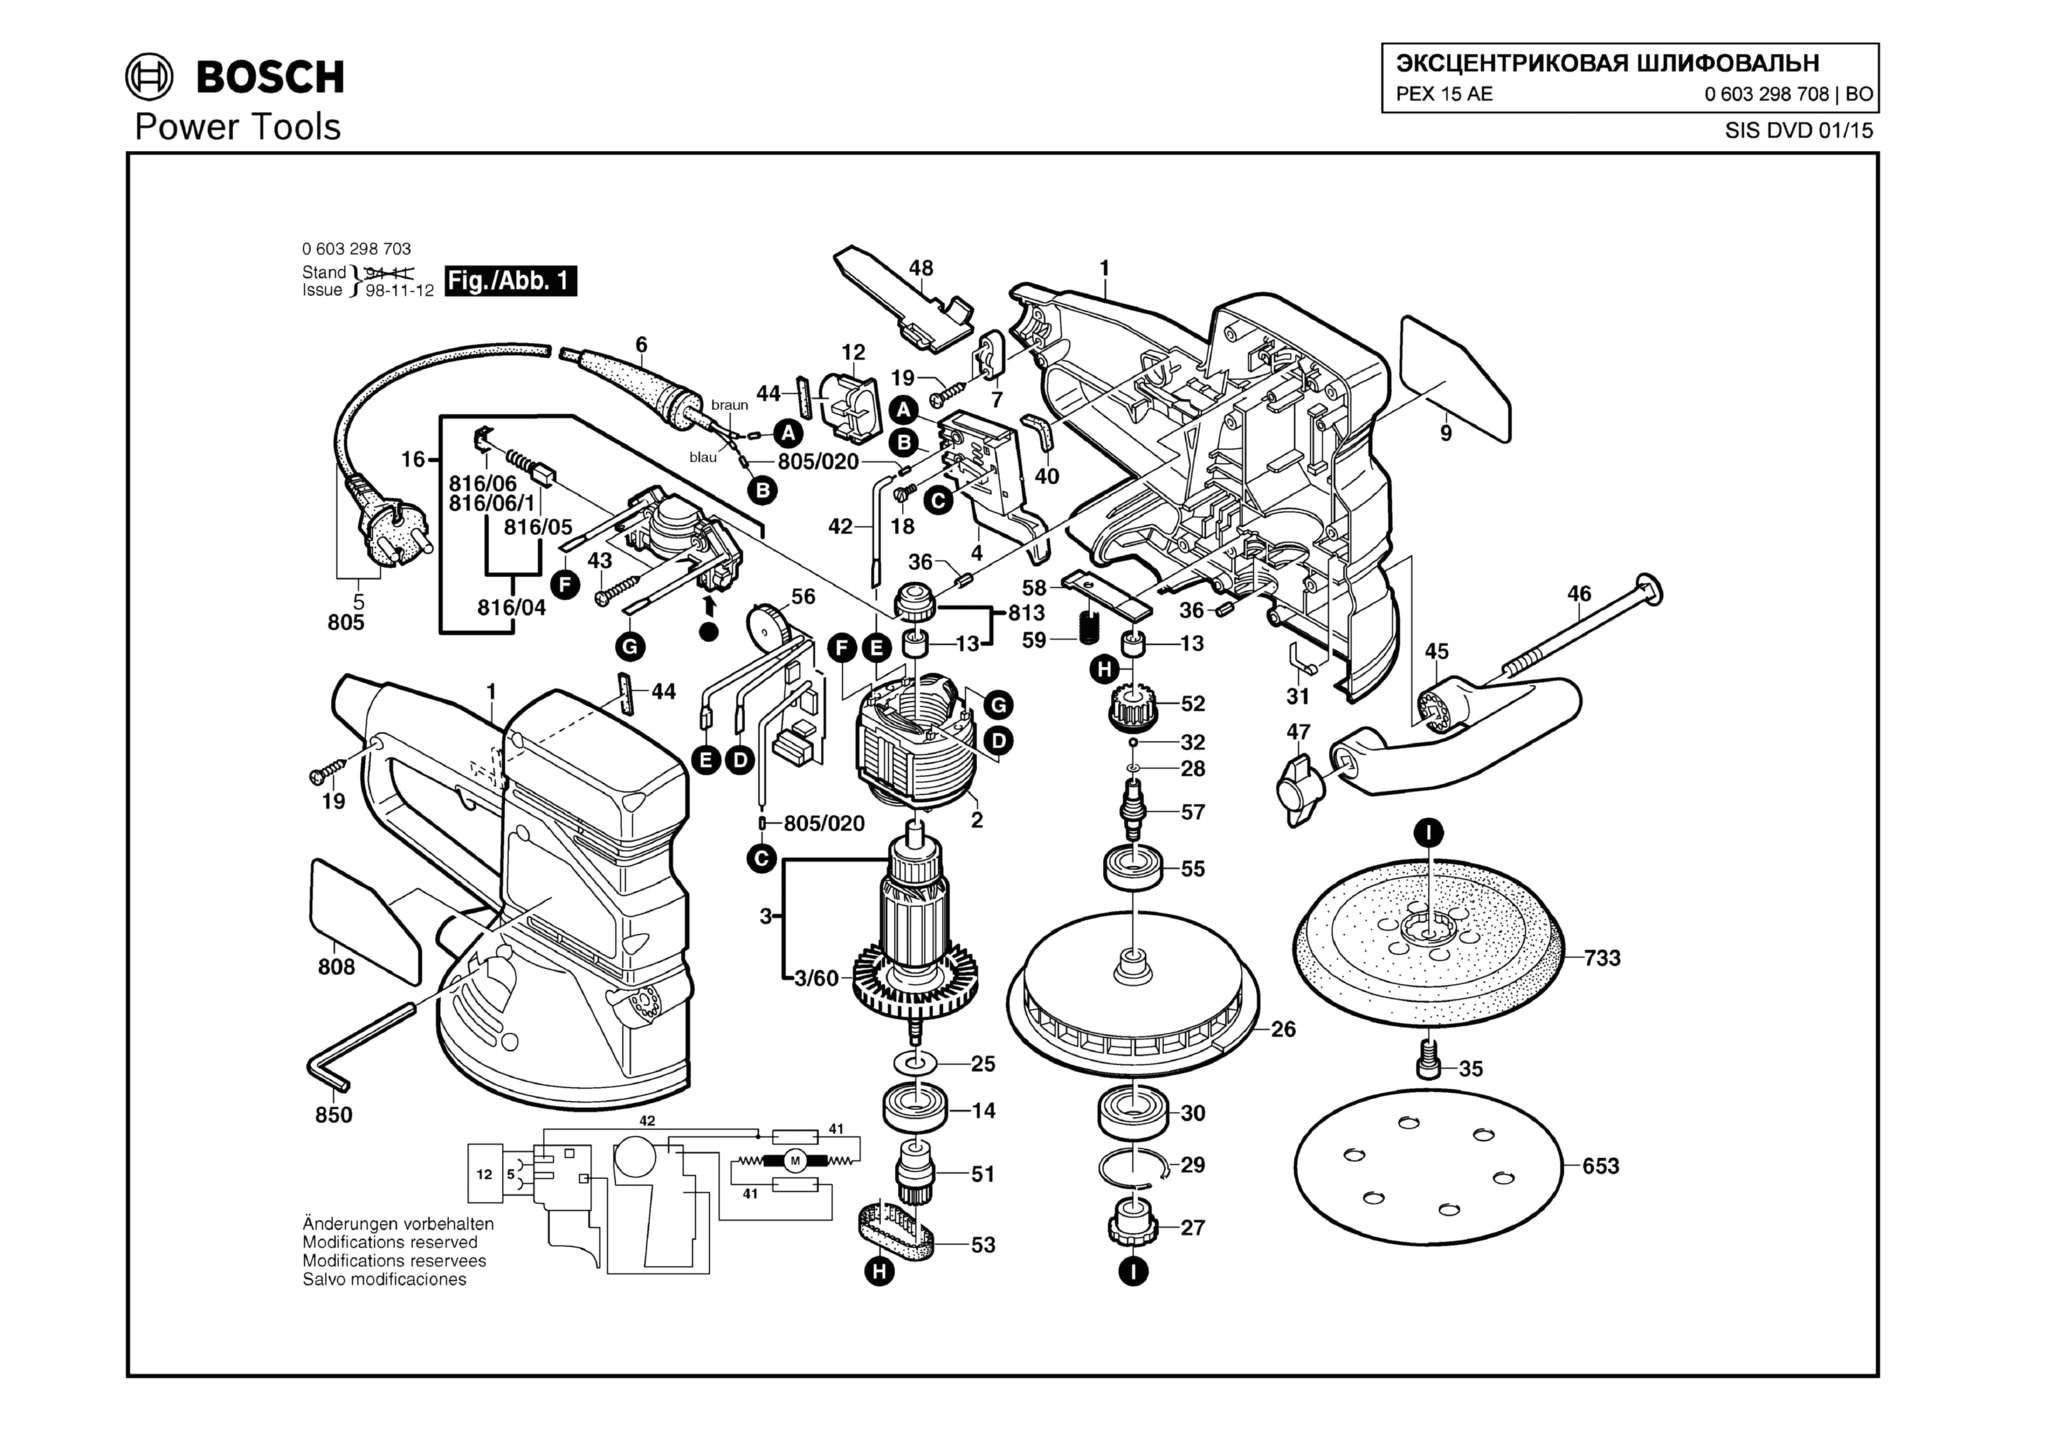 Запчасти, схема и деталировка Bosch PEX 15 AE (ТИП 0603298708)